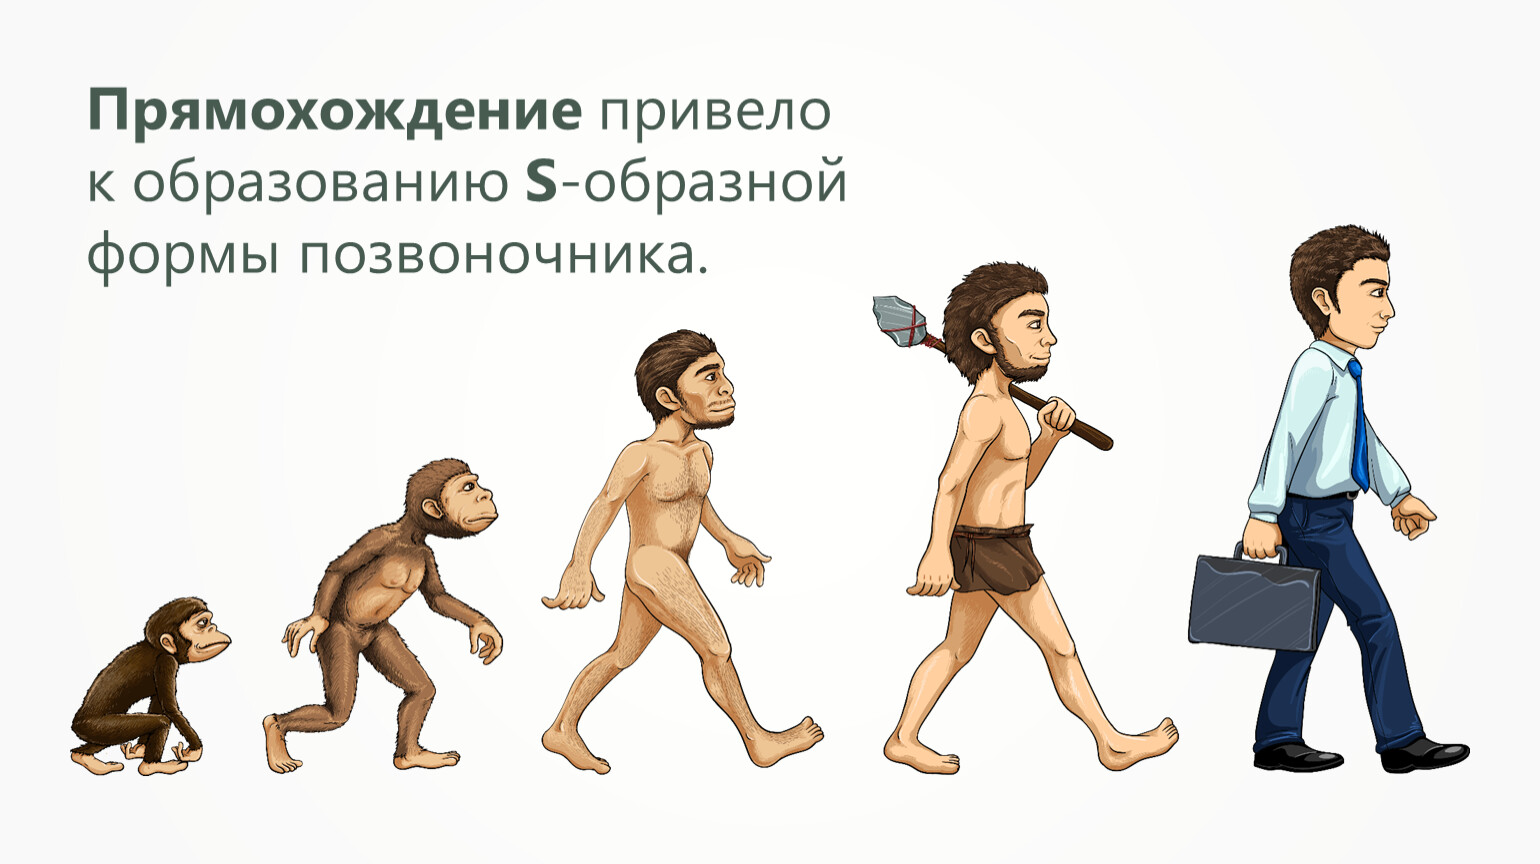 Прямохождения привело. Превращение в обезьяну. От обезьяны к человеку. Эволюция человека. Эволюция обезьяны в человека.